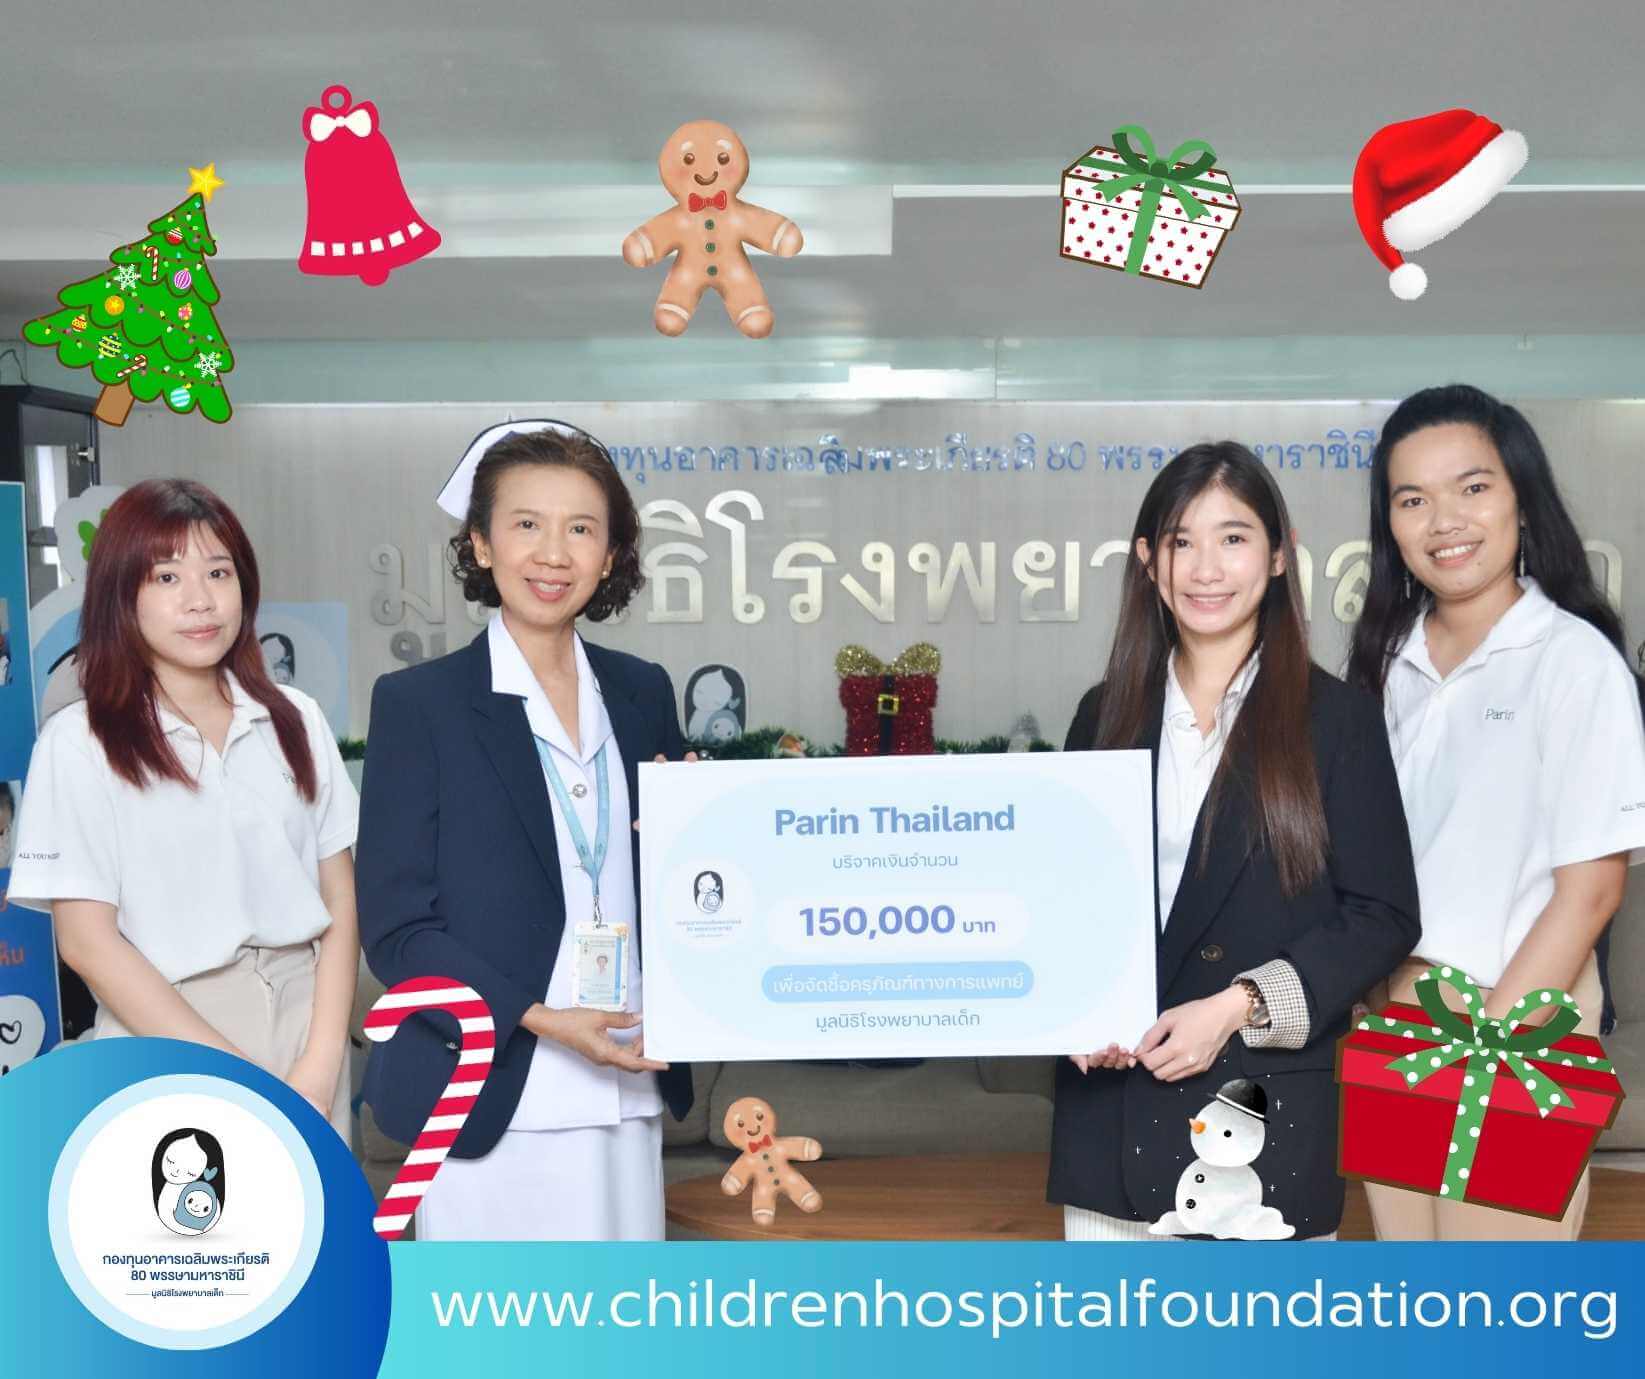 บริษัท Parin Thailand (พาลิน) ช่วยผู้ป่วยเด็ก โครงการ ช่วยน้องให้มองเห็น